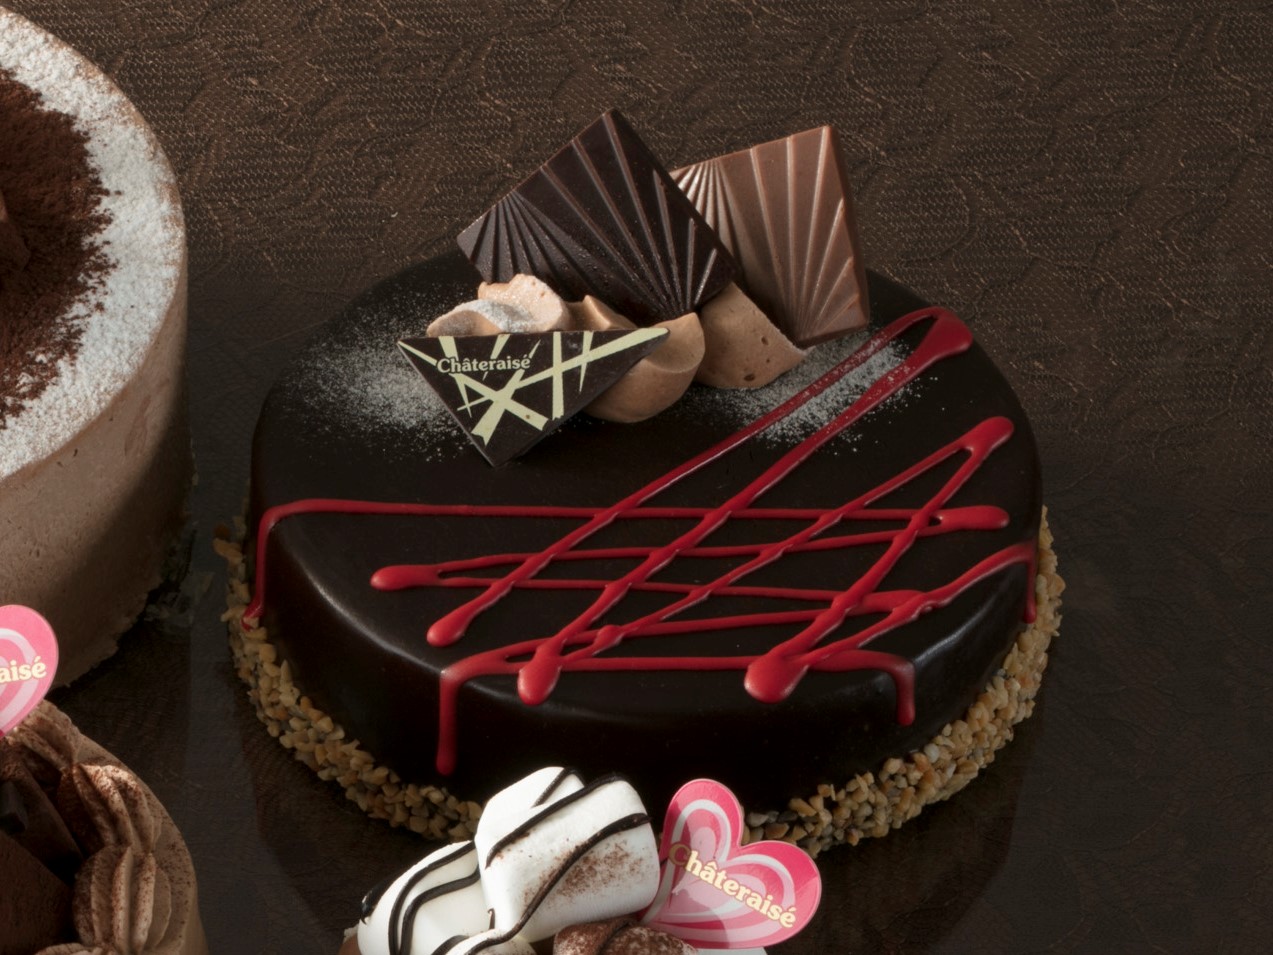 第三弾 バレンタインにいつもと違う食後の楽しみを 家族や職場で喜ばれる チョコを味わうケーキ シャトレーゼ公式ブログ